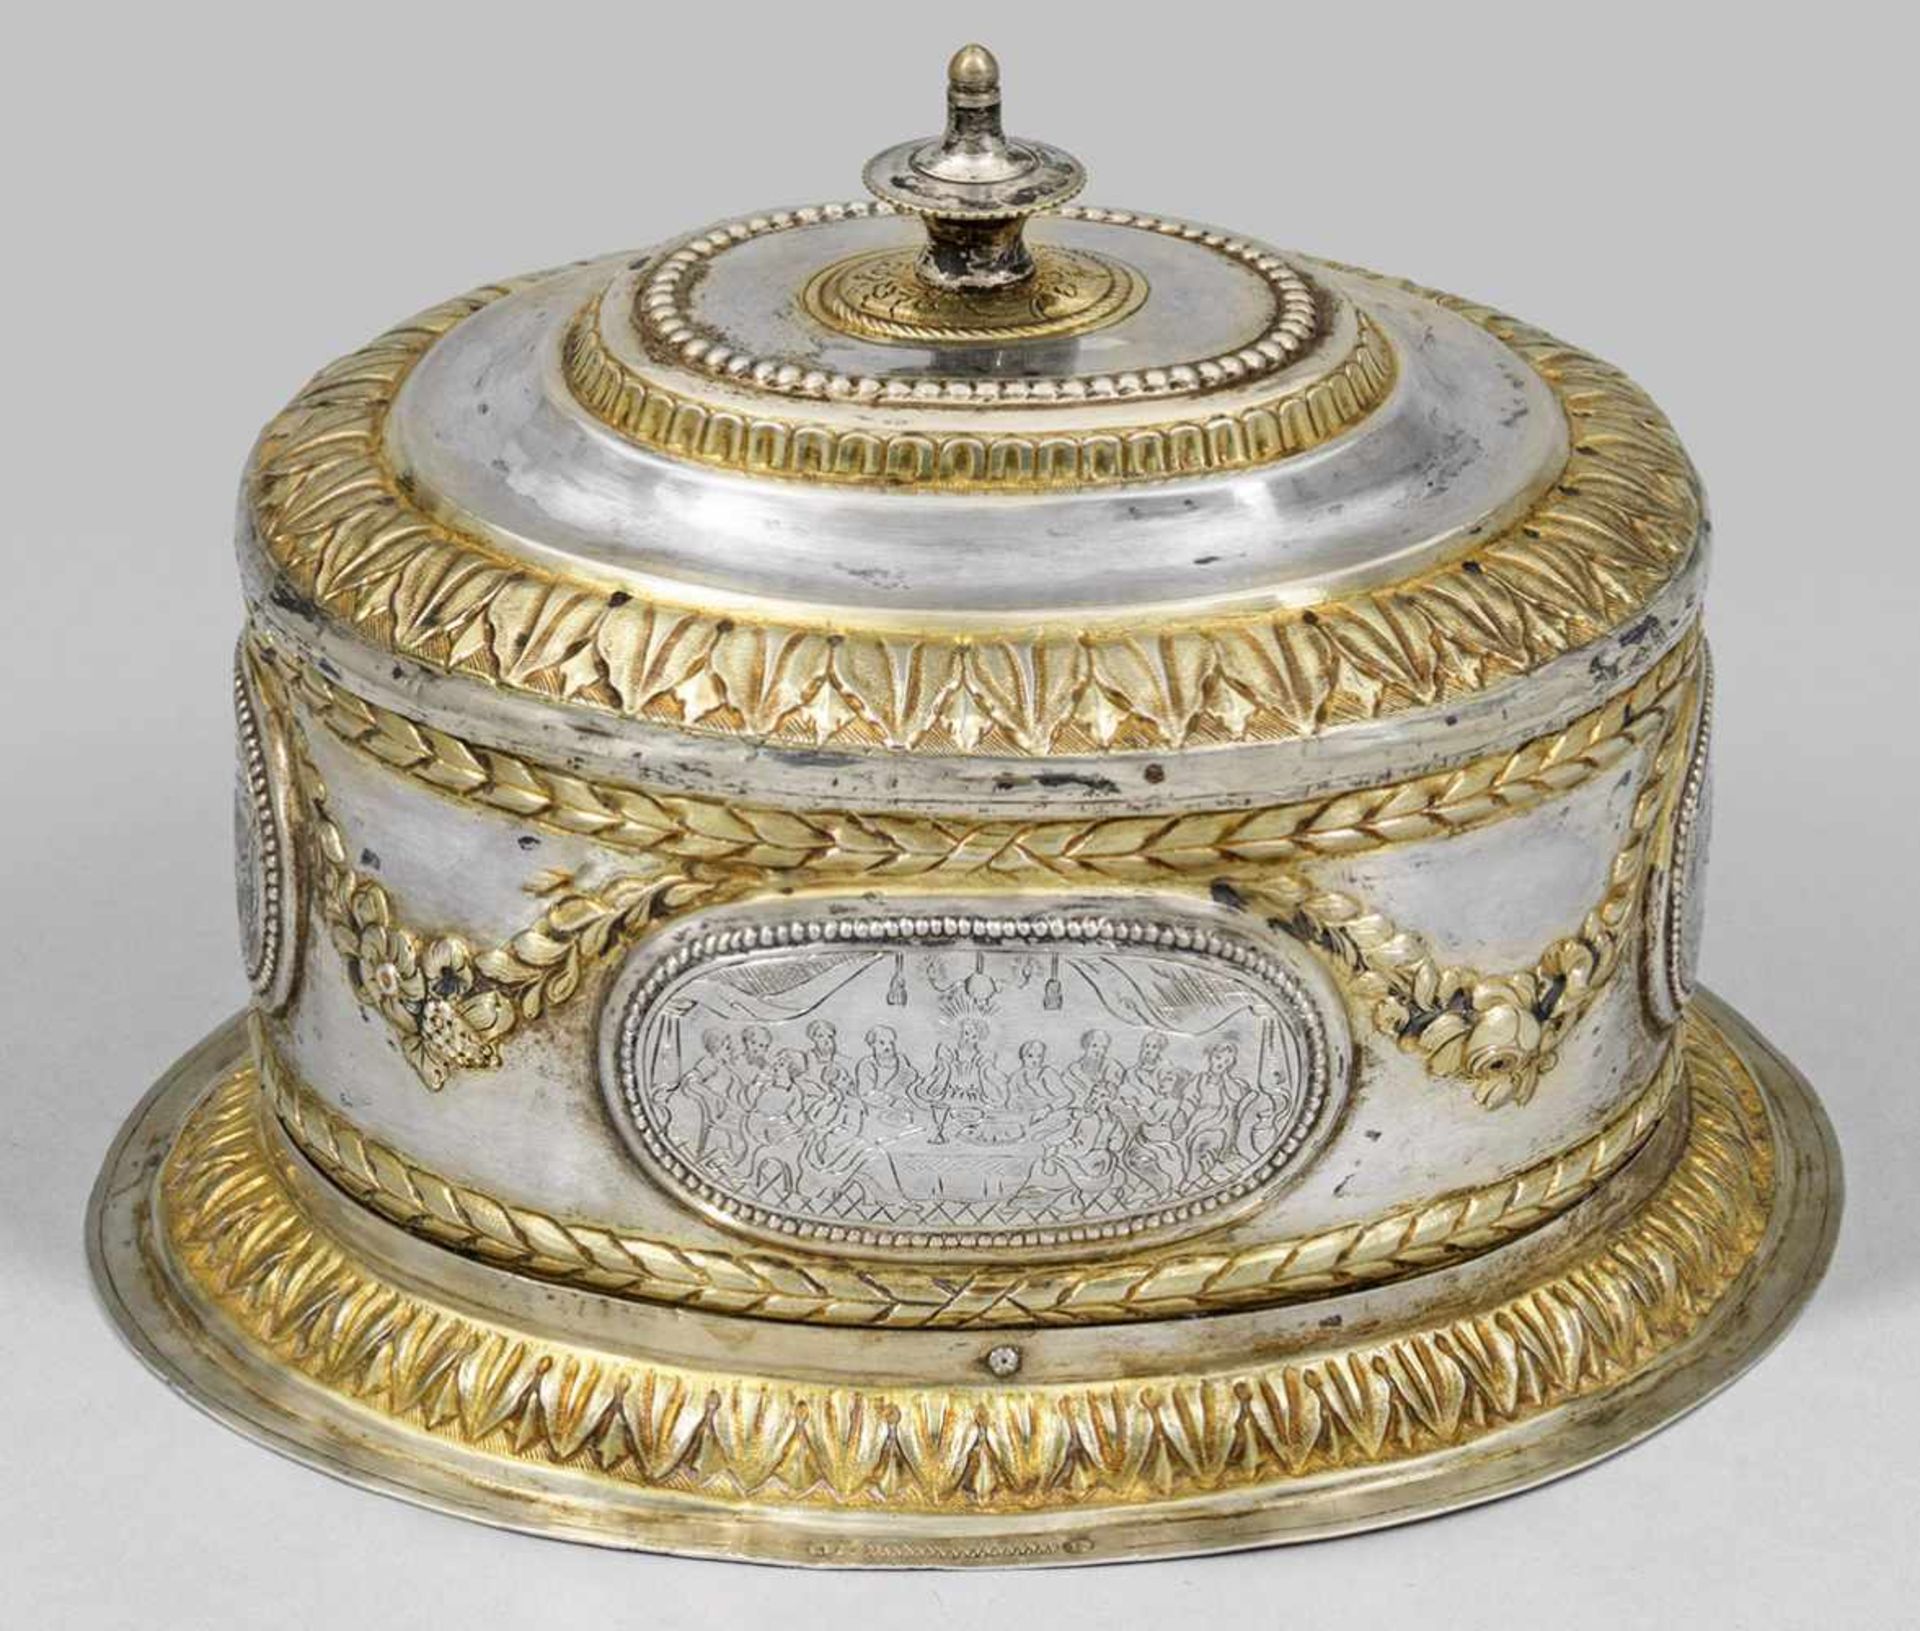 Baltische Empire-OblatendoseSilber, teilvergoldet. Von einem Blattfries gerahmter, ausgestellter